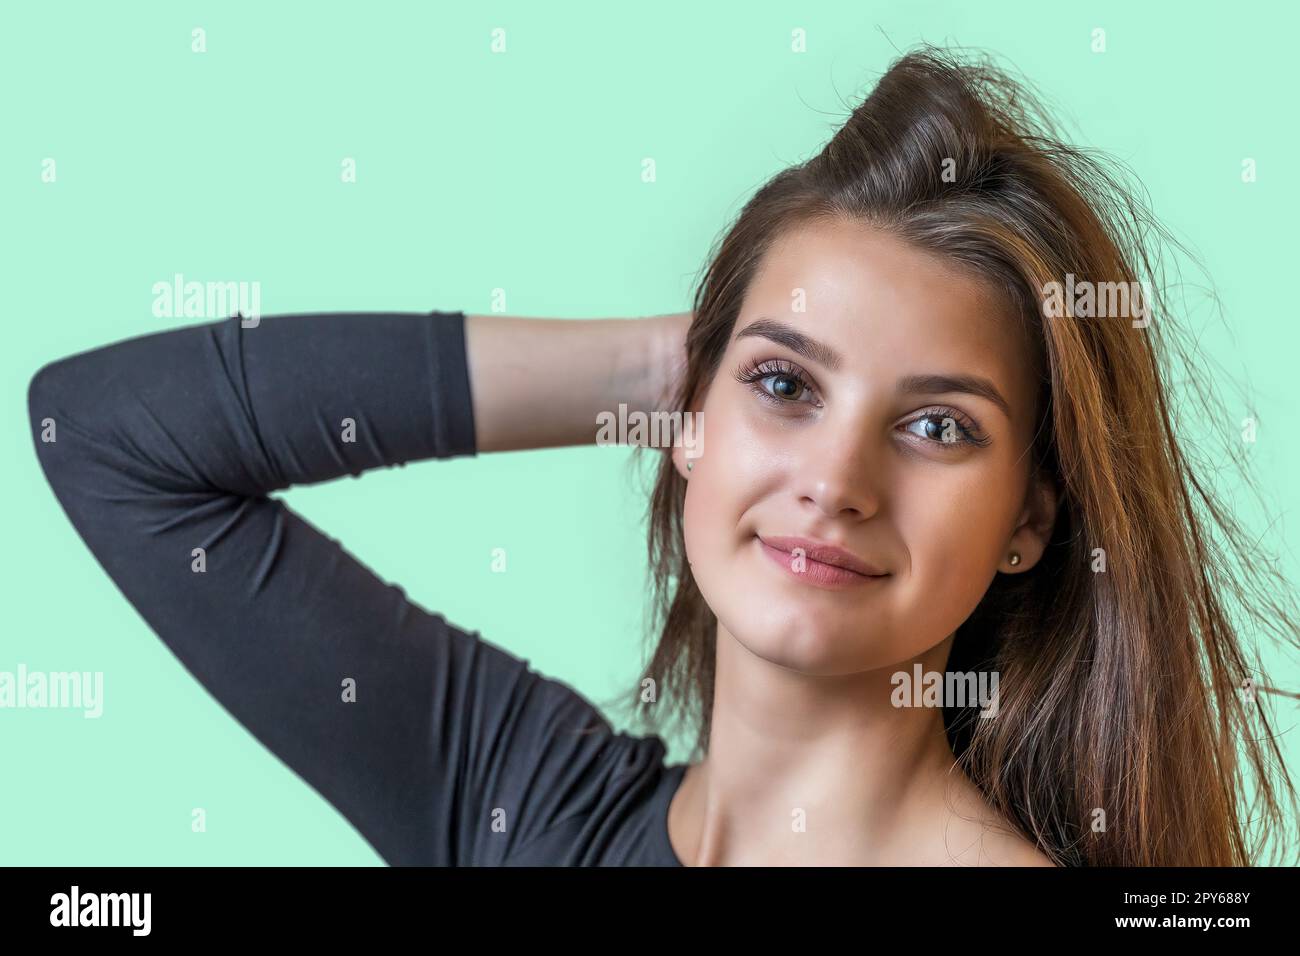 Porträt eines lächelnden, attraktiven Mädchens auf grünem Hintergrund. Stockfoto